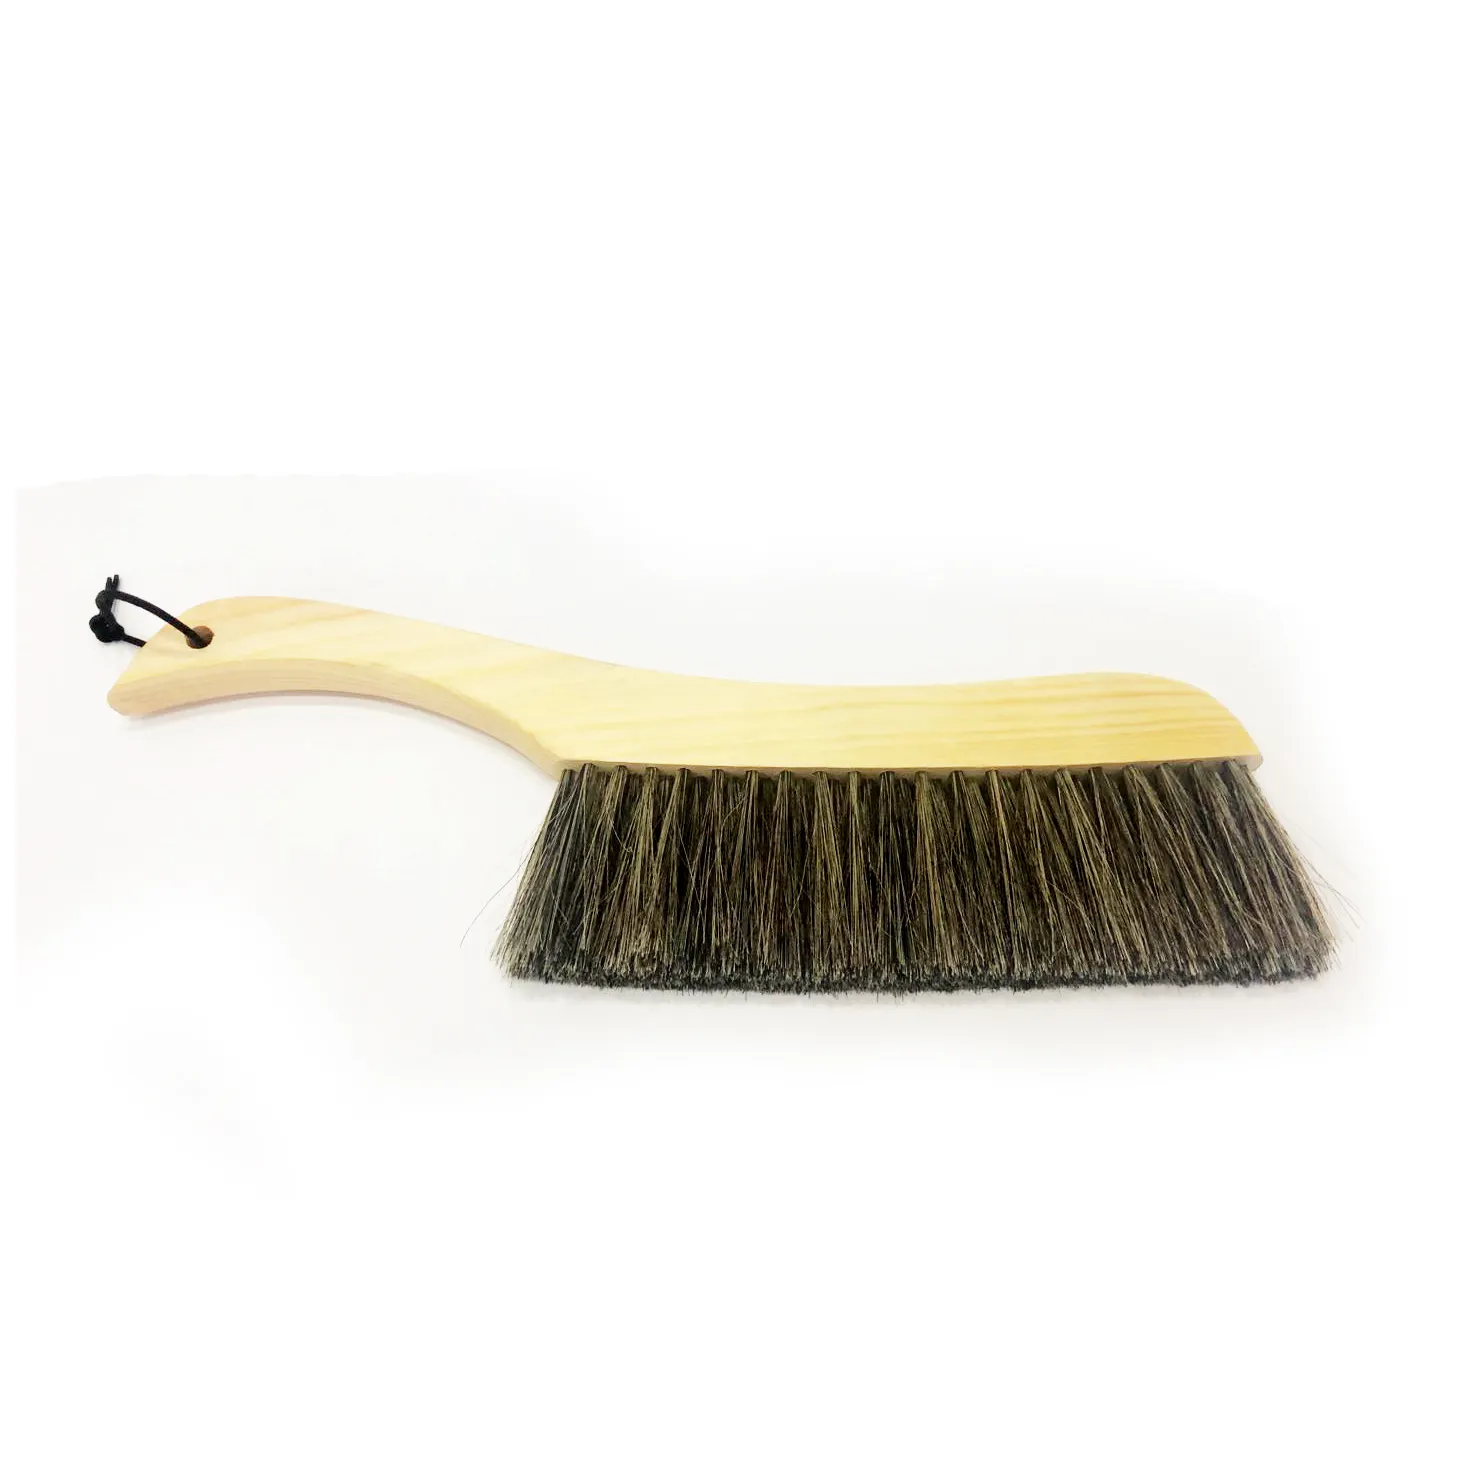 Щетка из мягкой щетины лошадиного волоса для очистки от пыли с деревянной ручкой для простыней, одежды, дивана, коврового покрытия